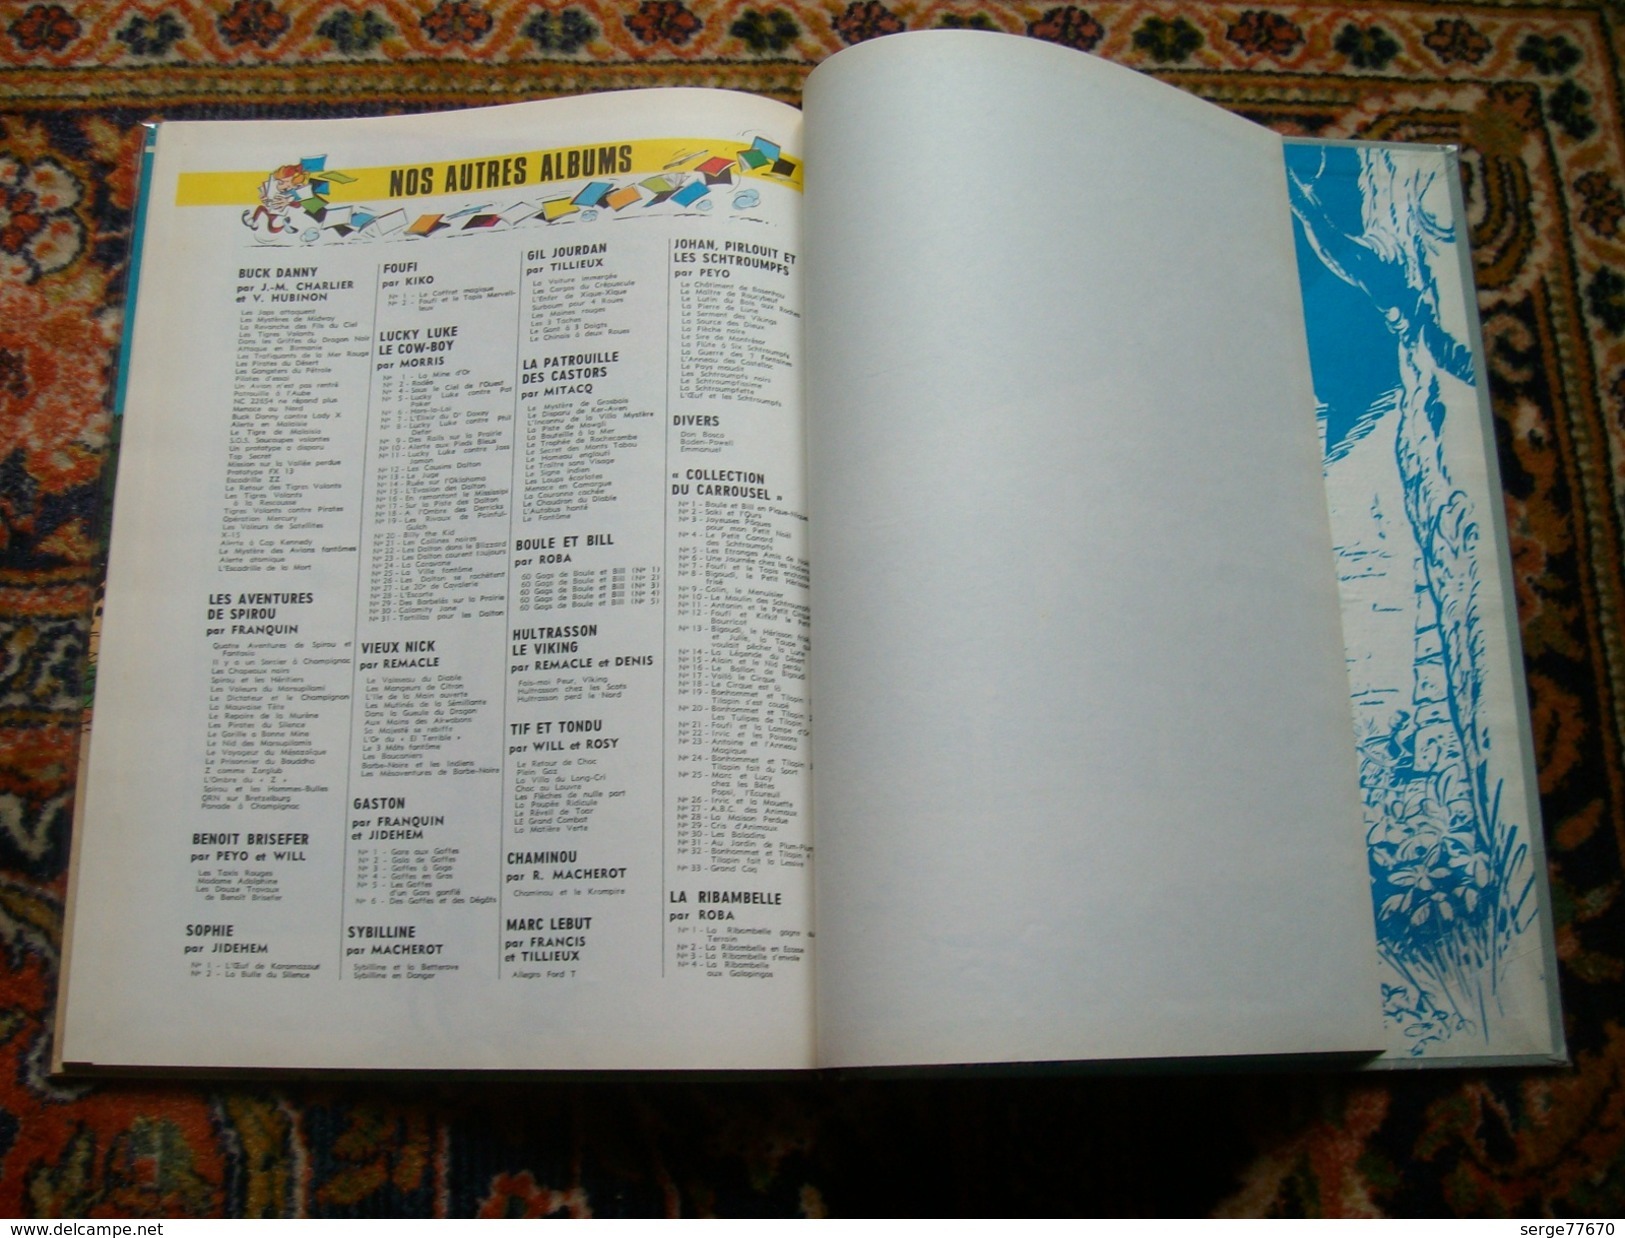 Spirou et Fantasio Franquin Panade à Champignac 1969 édition originale titre en bleu eo Dupuis